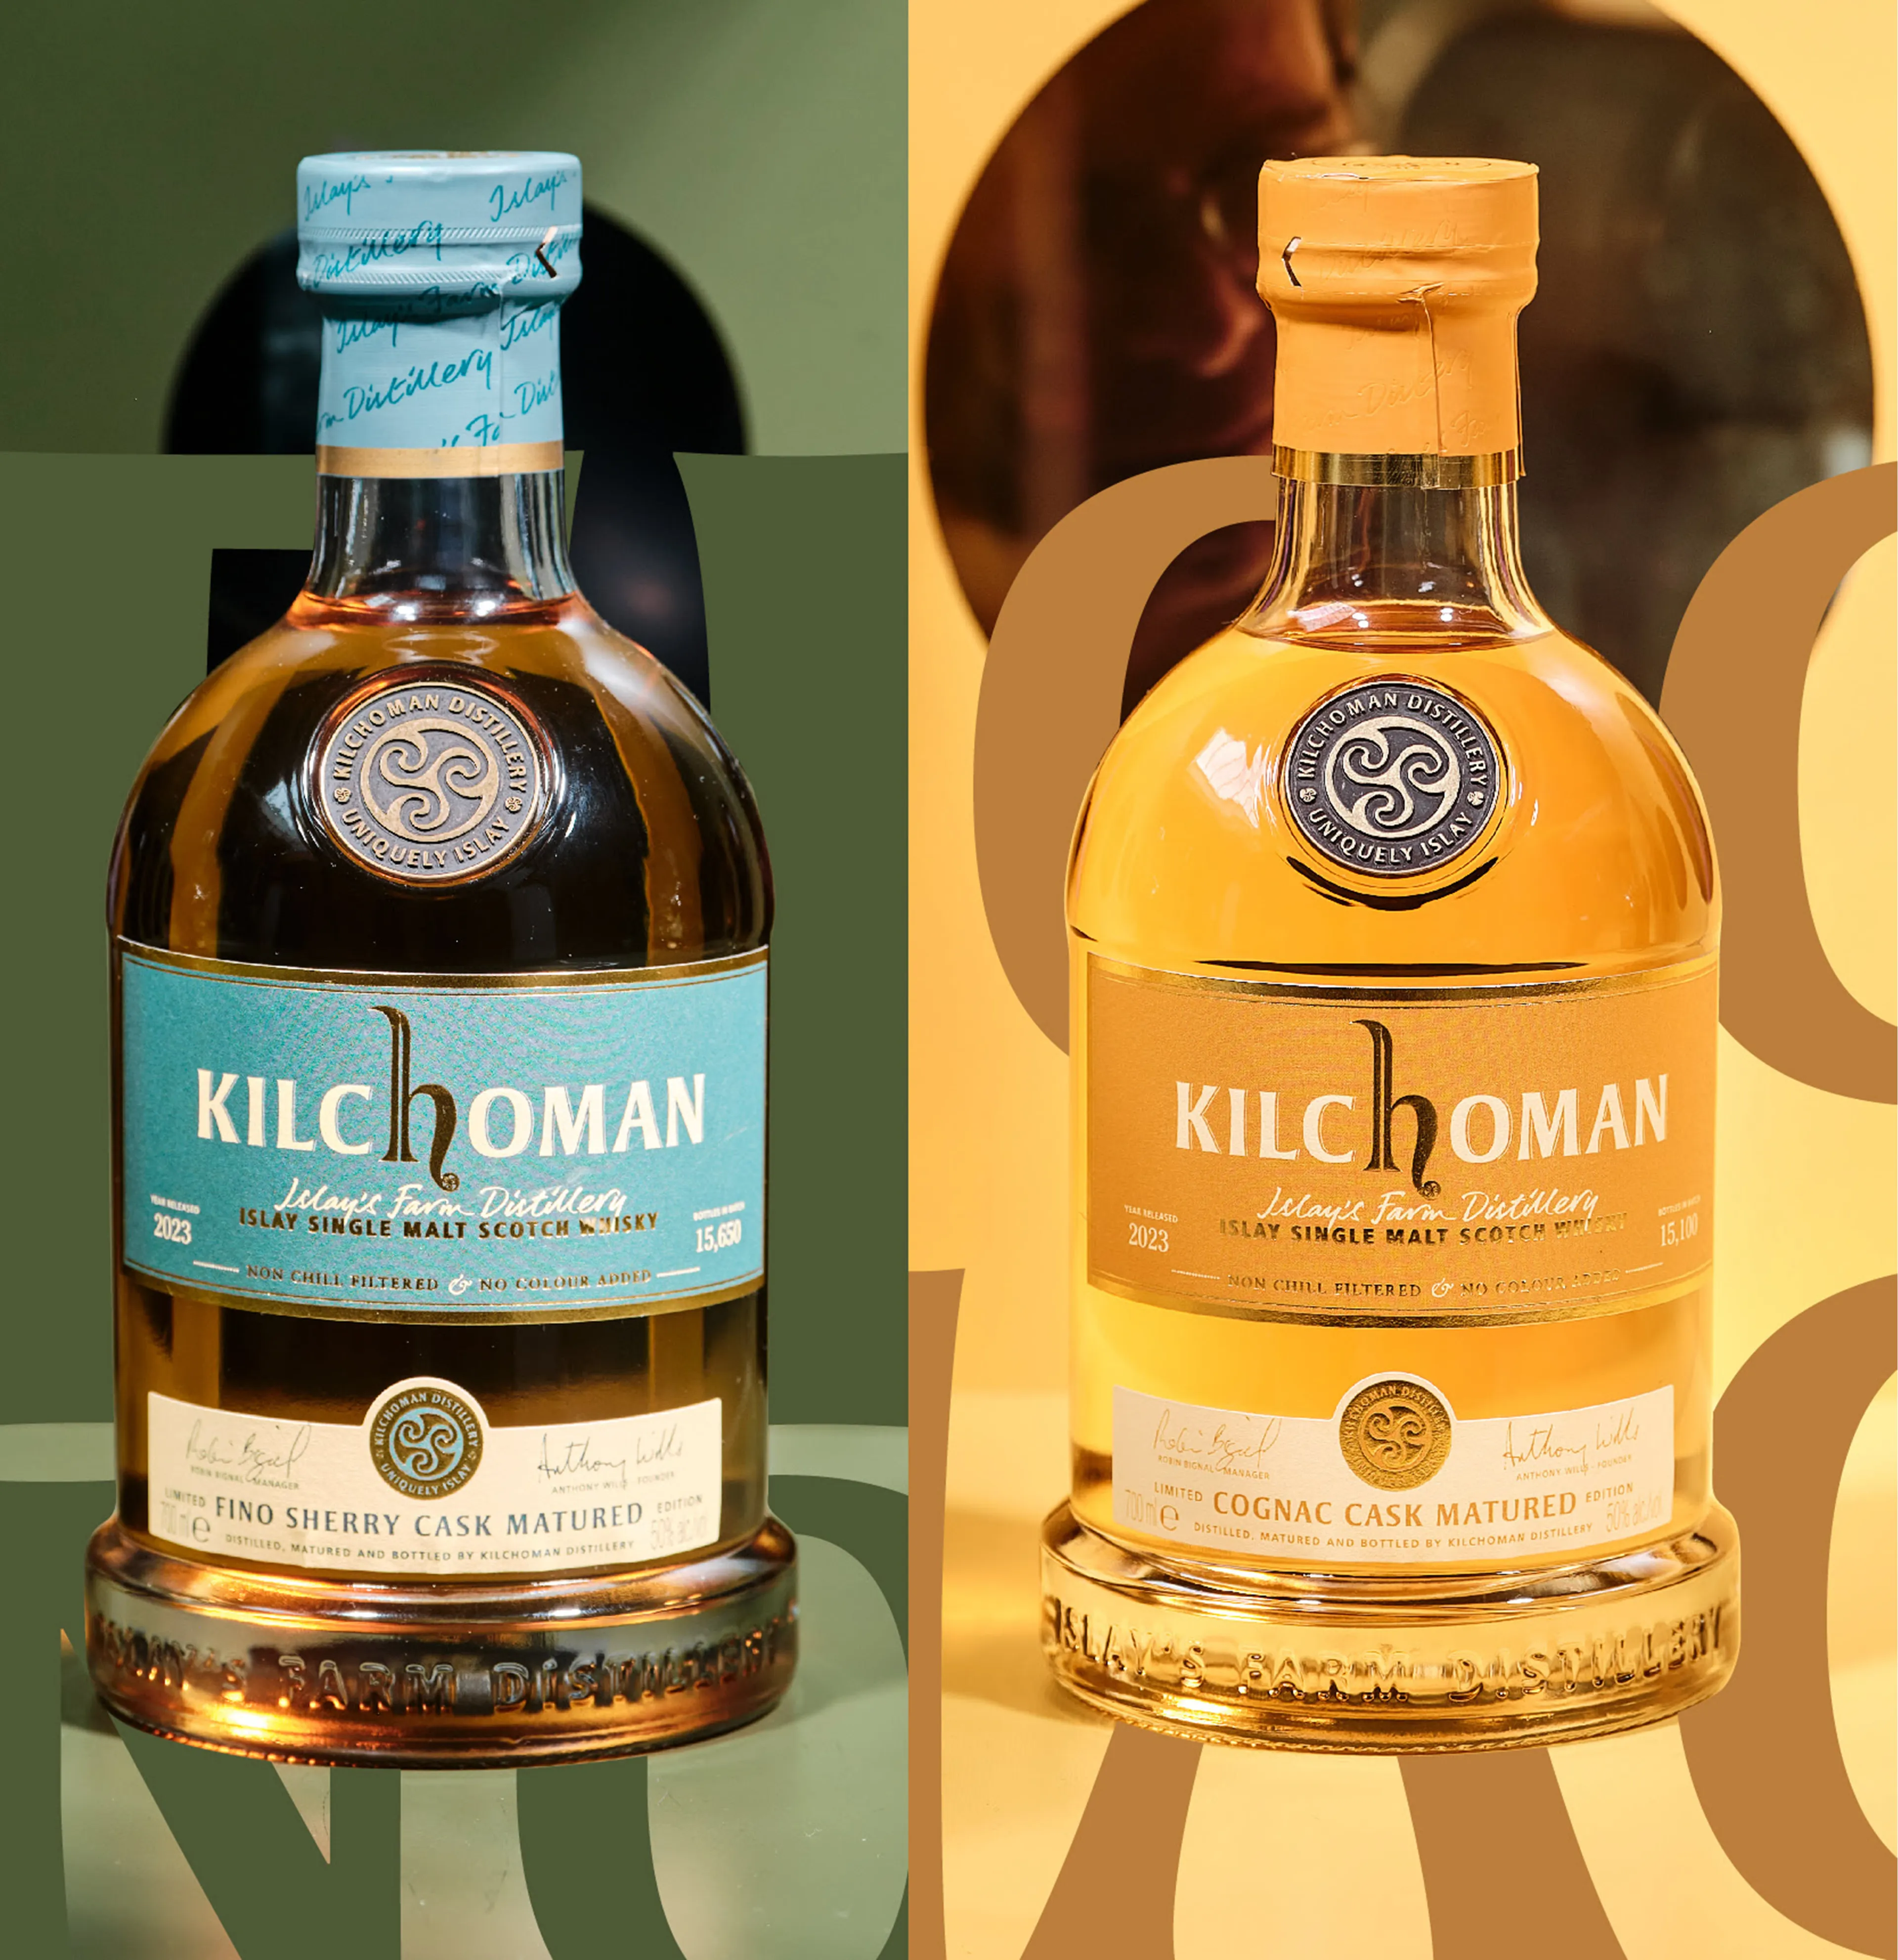 De nieuwe Kilchoman whisky's in volle glorie